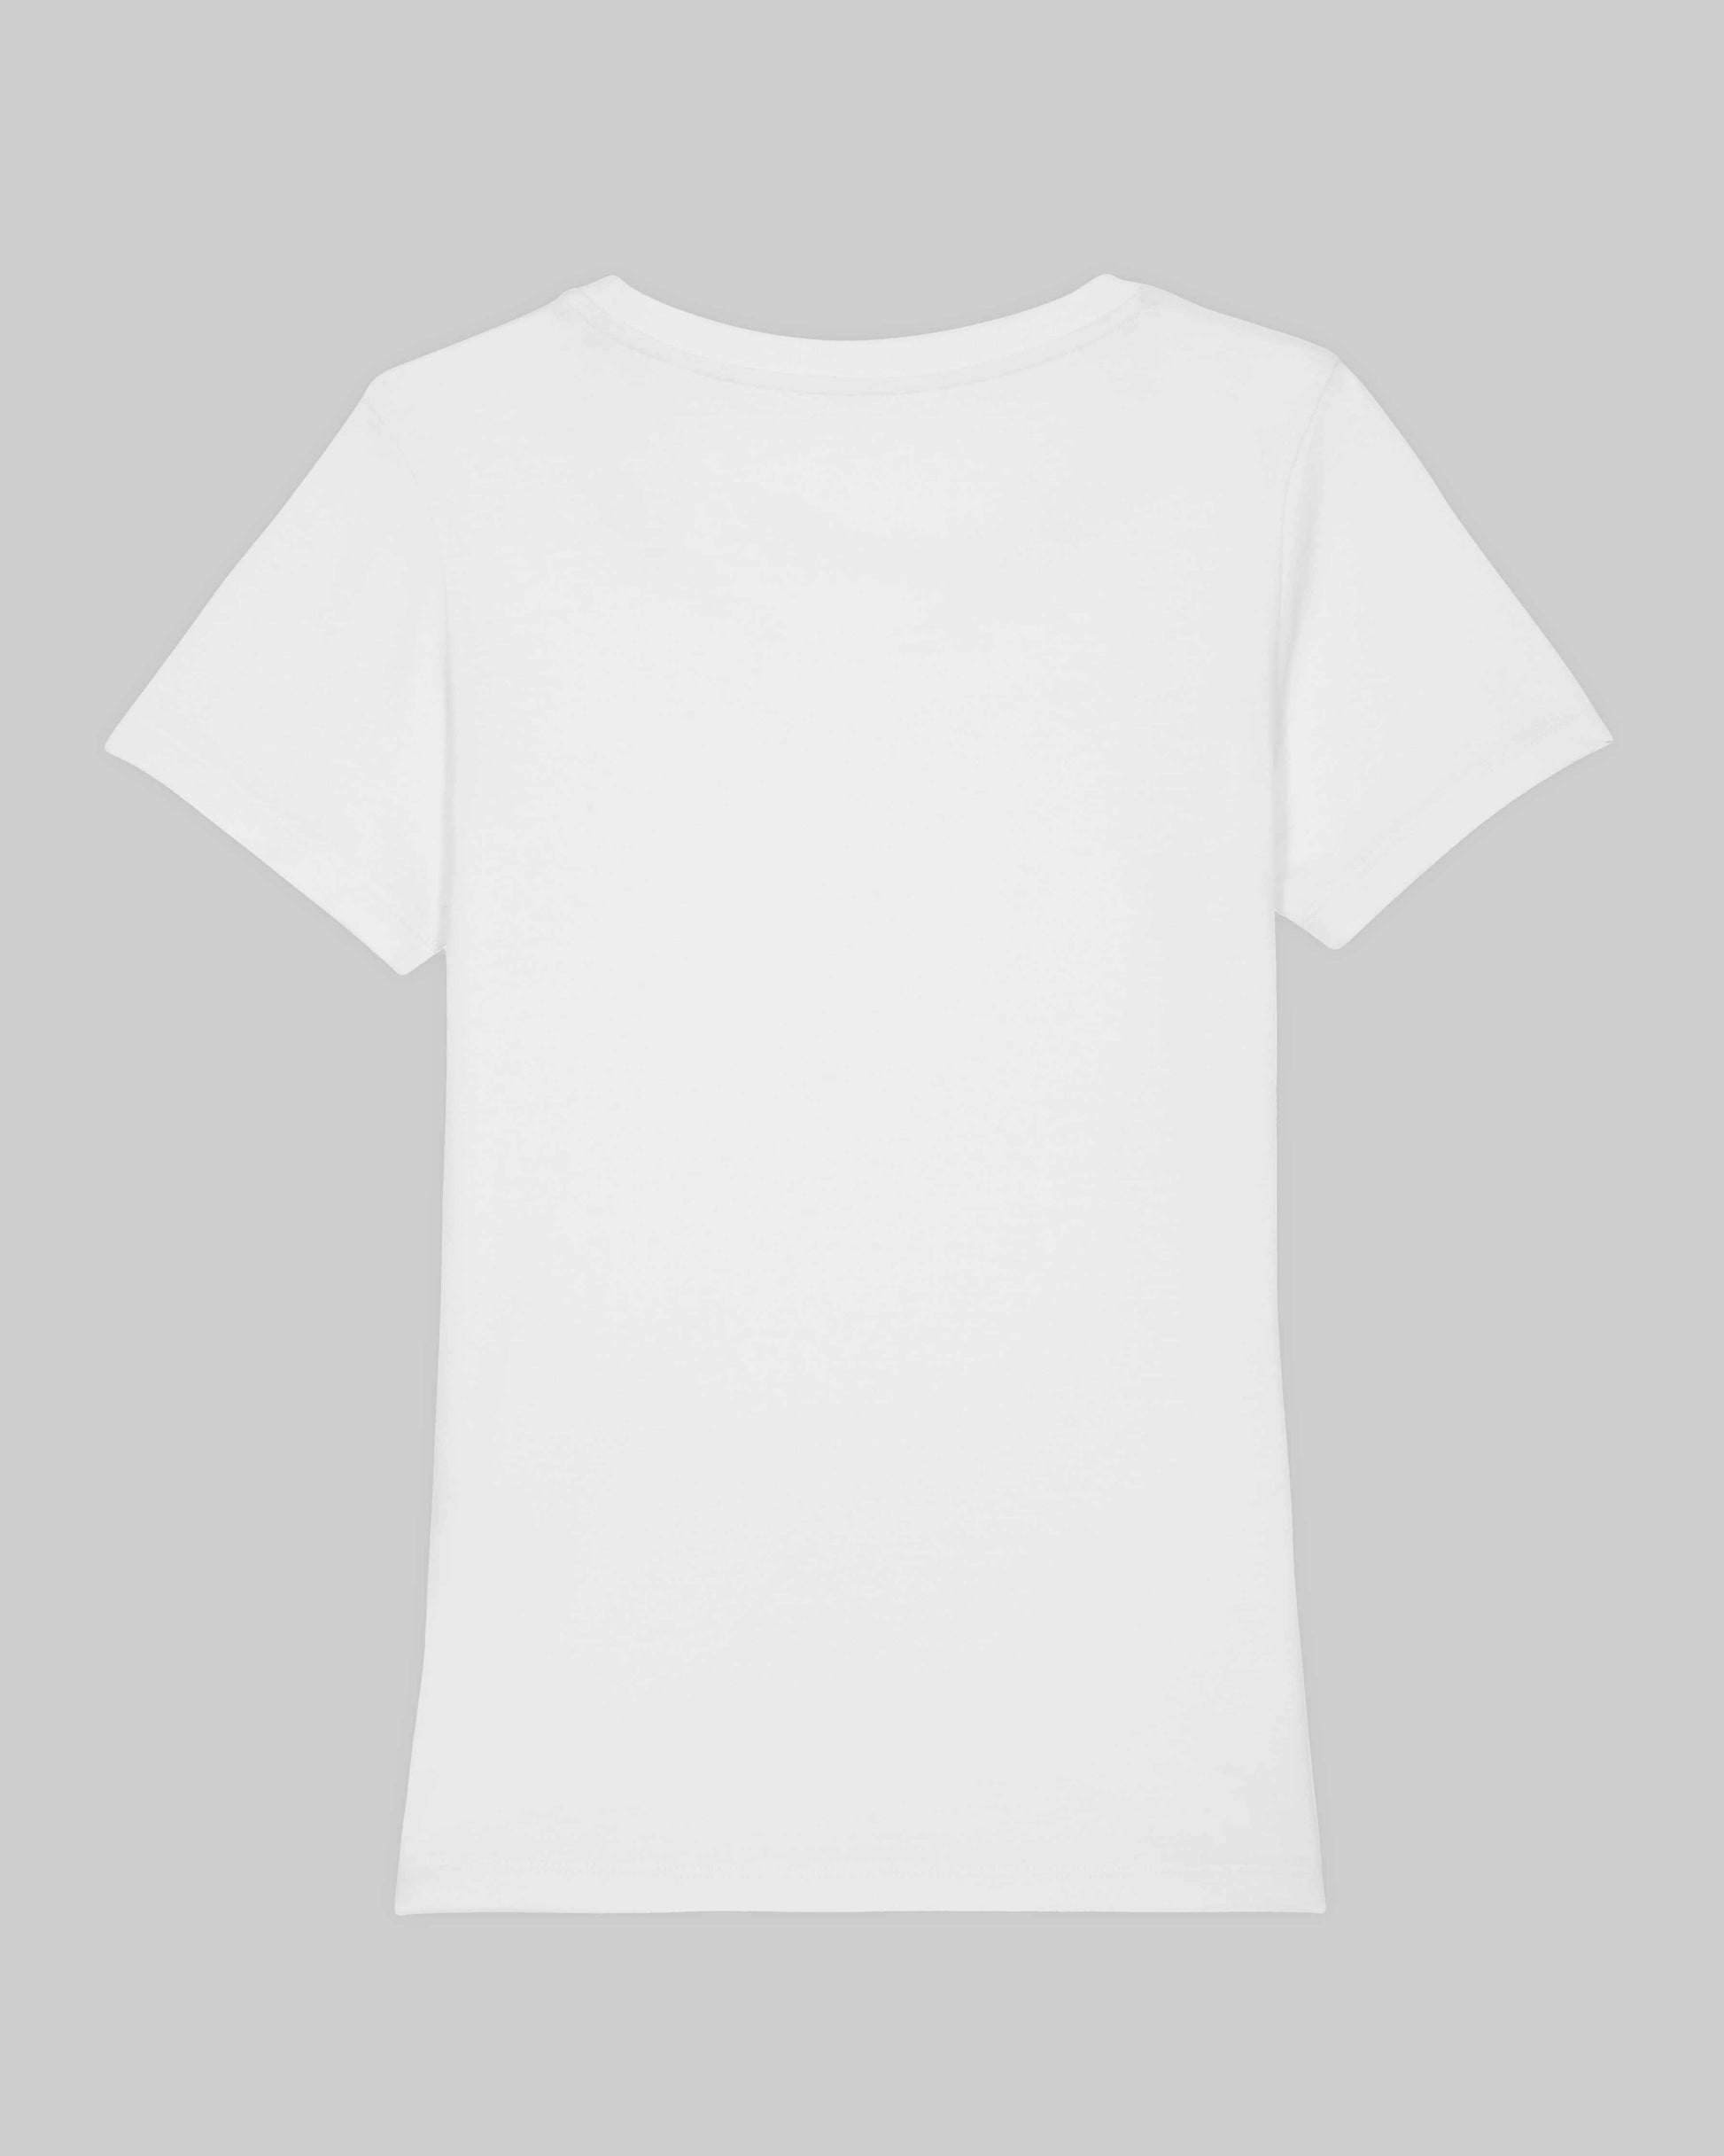 EINHORST® Organic Shirt tailliert in "Weiß" mit dem Motiv "equal Regenbogen" in der Kombination bunter Regenbogen mit schwarzer Schrift, Bild von Shirt von hinten